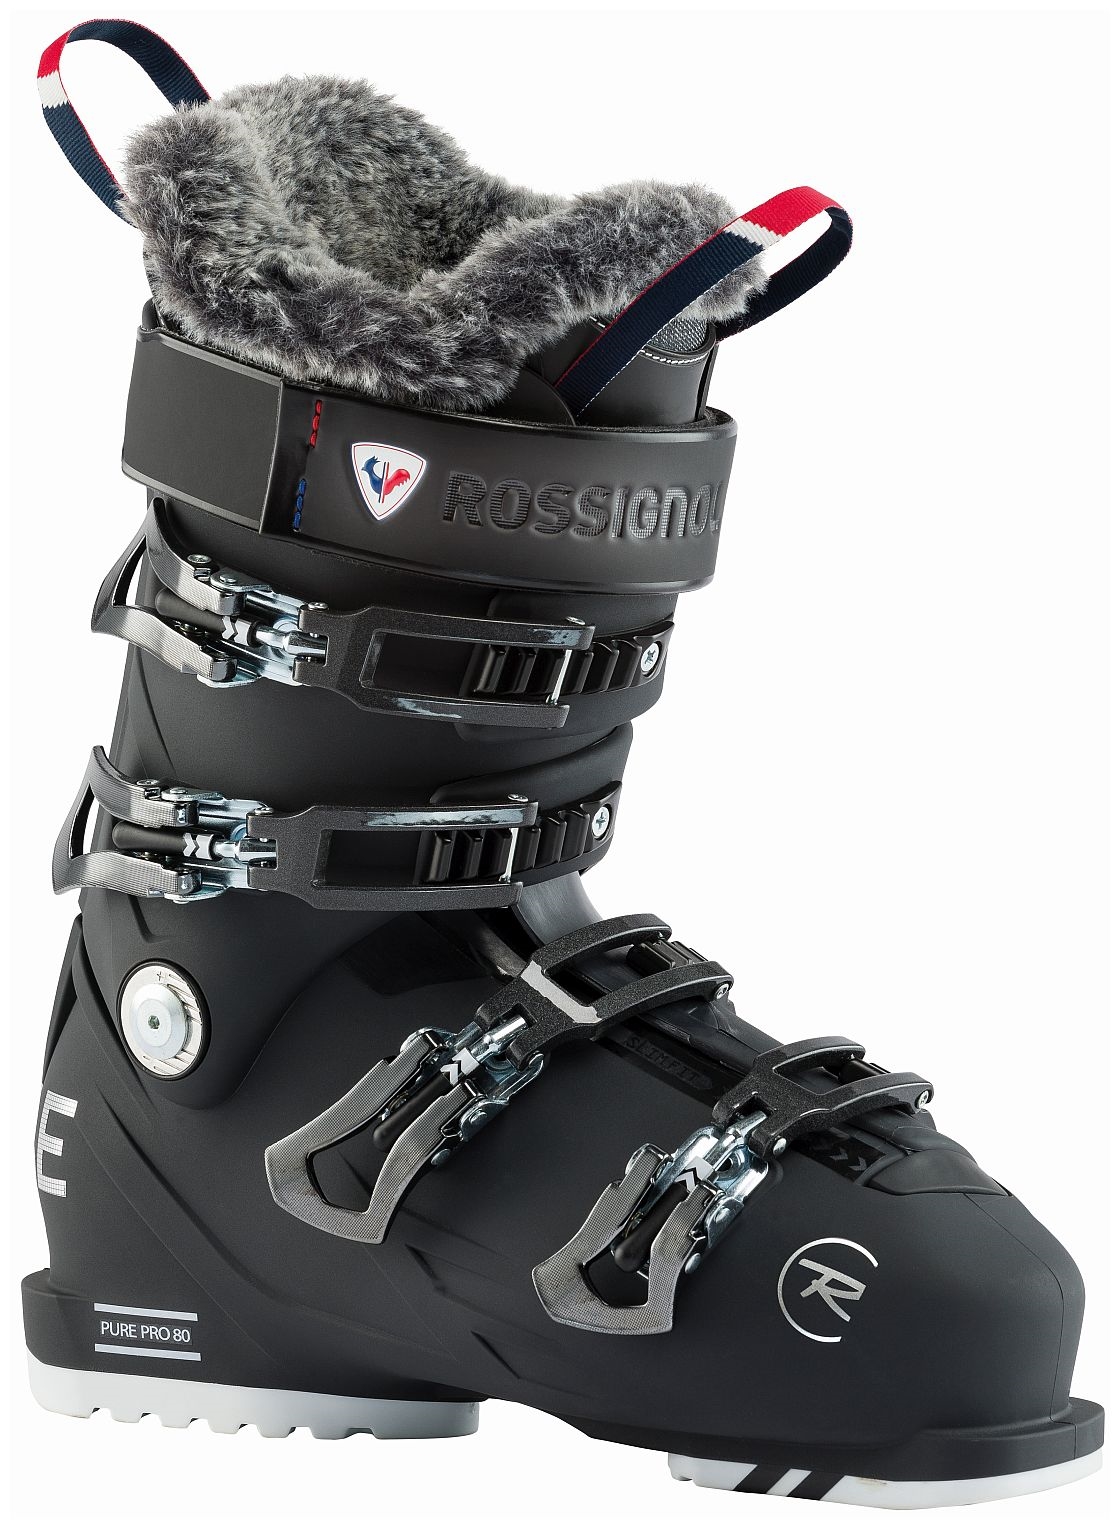 Rossignol buty narciarskie damskie Pure Pro 80